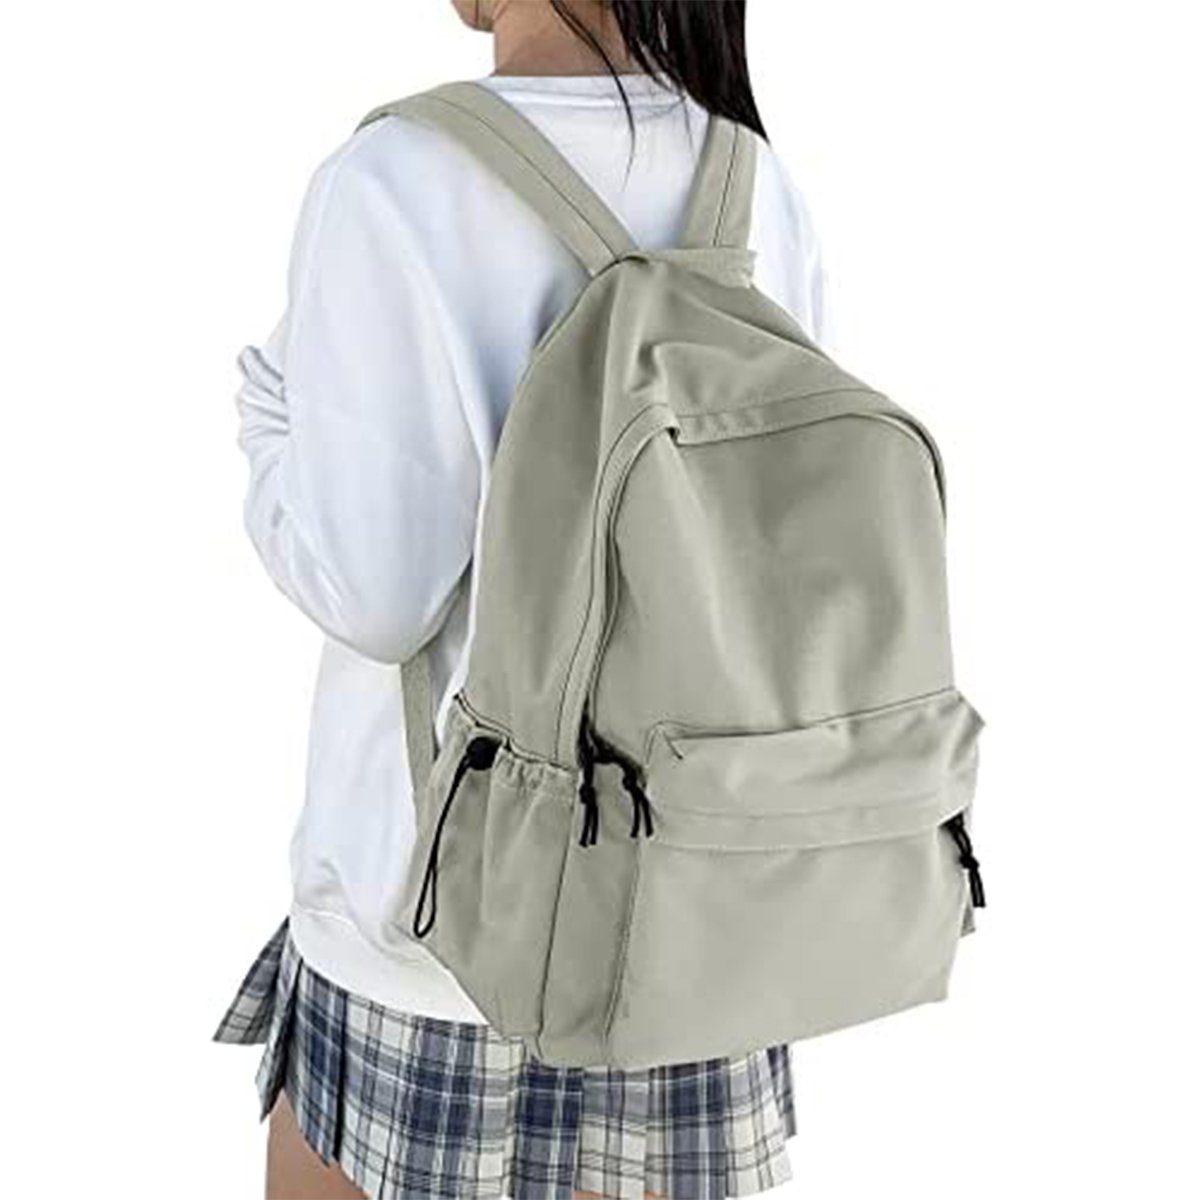 XDeer Schulrucksack Schulrucksack Damen Travel Schultaschen, 15,6 Zoll Laptop Rucksack für Mädchen im Teenageralter Bookbag Grün